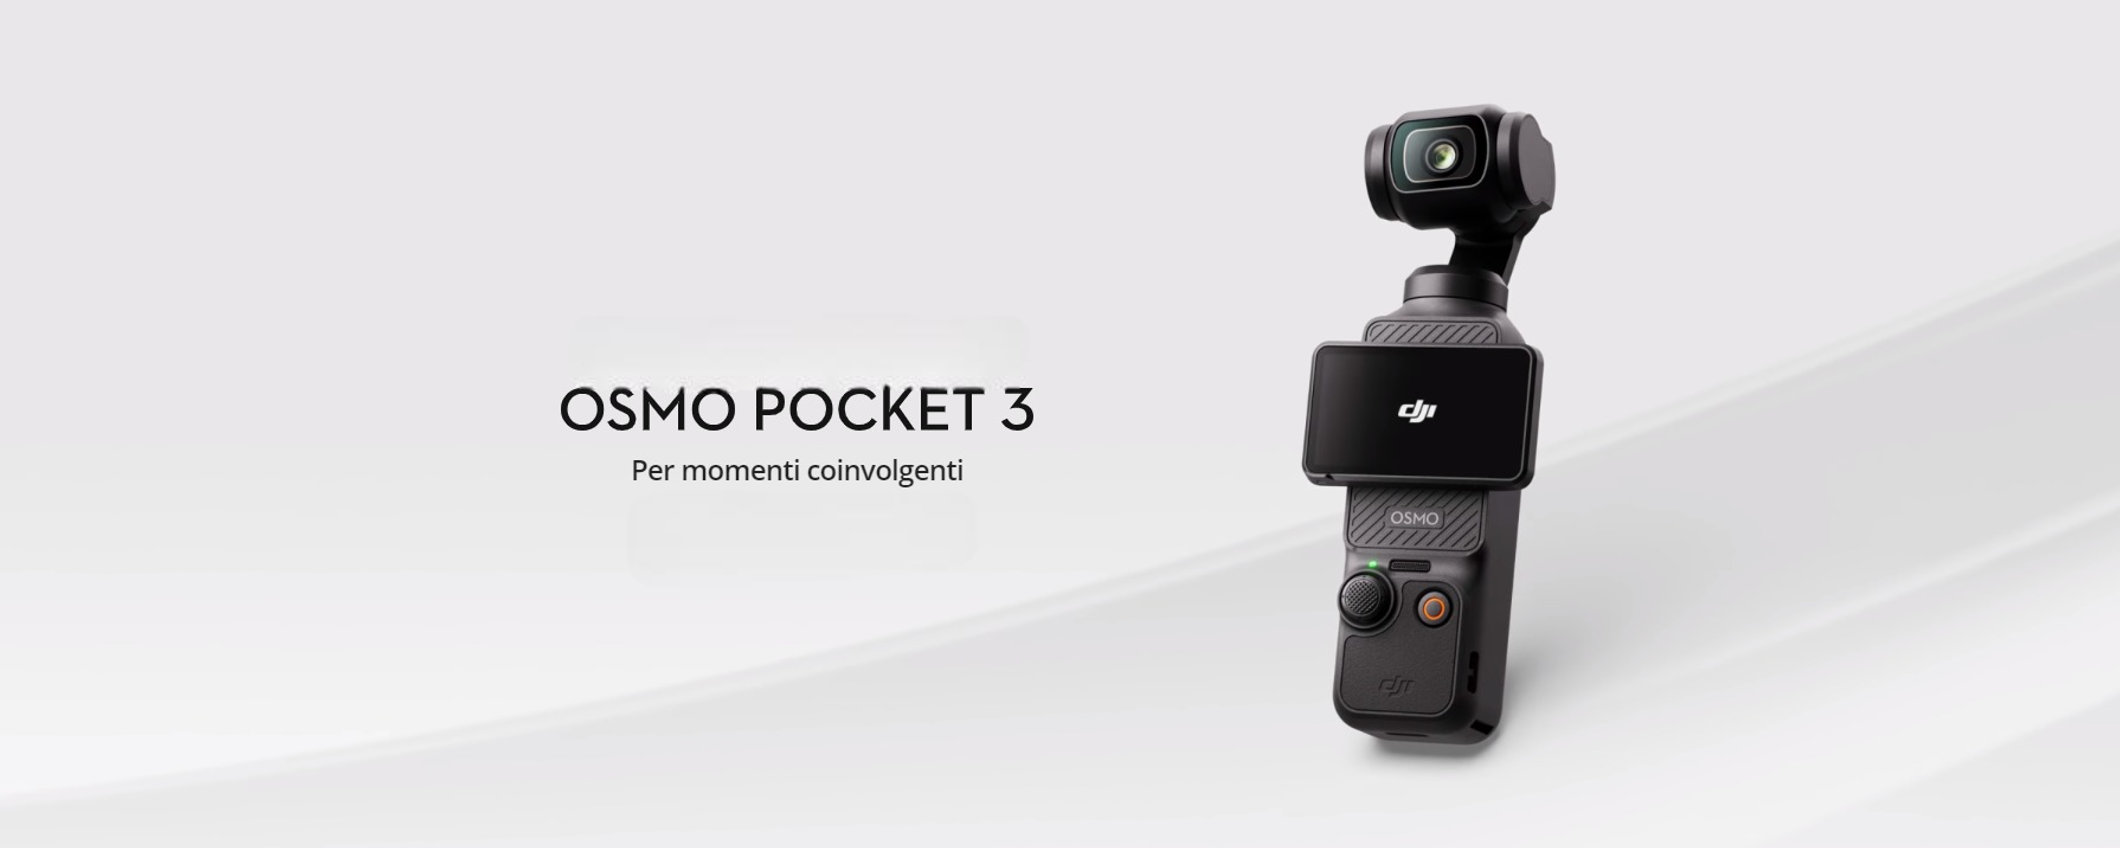 Osmo Pocket 3 UFFICIALE: video MOZZAFIATO in 4K a 120fps